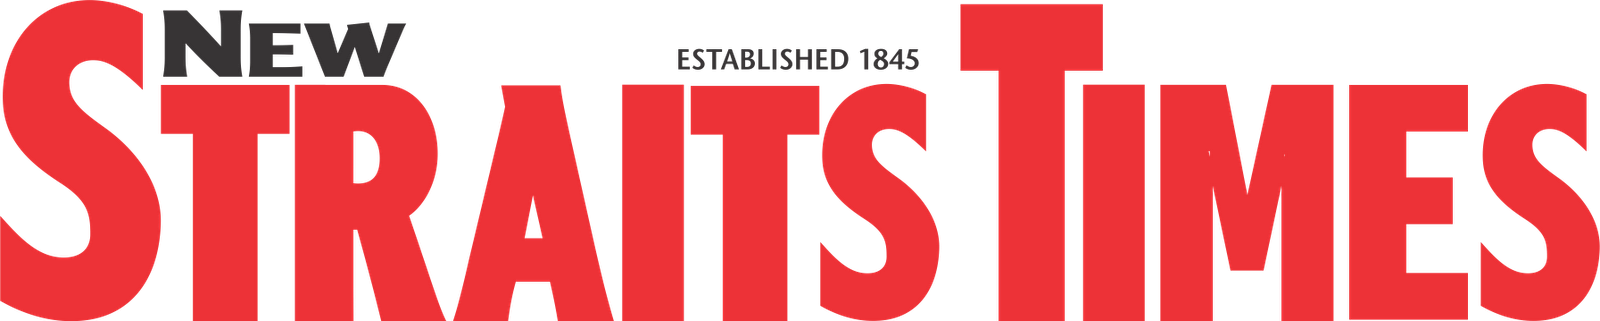 NST logo 1